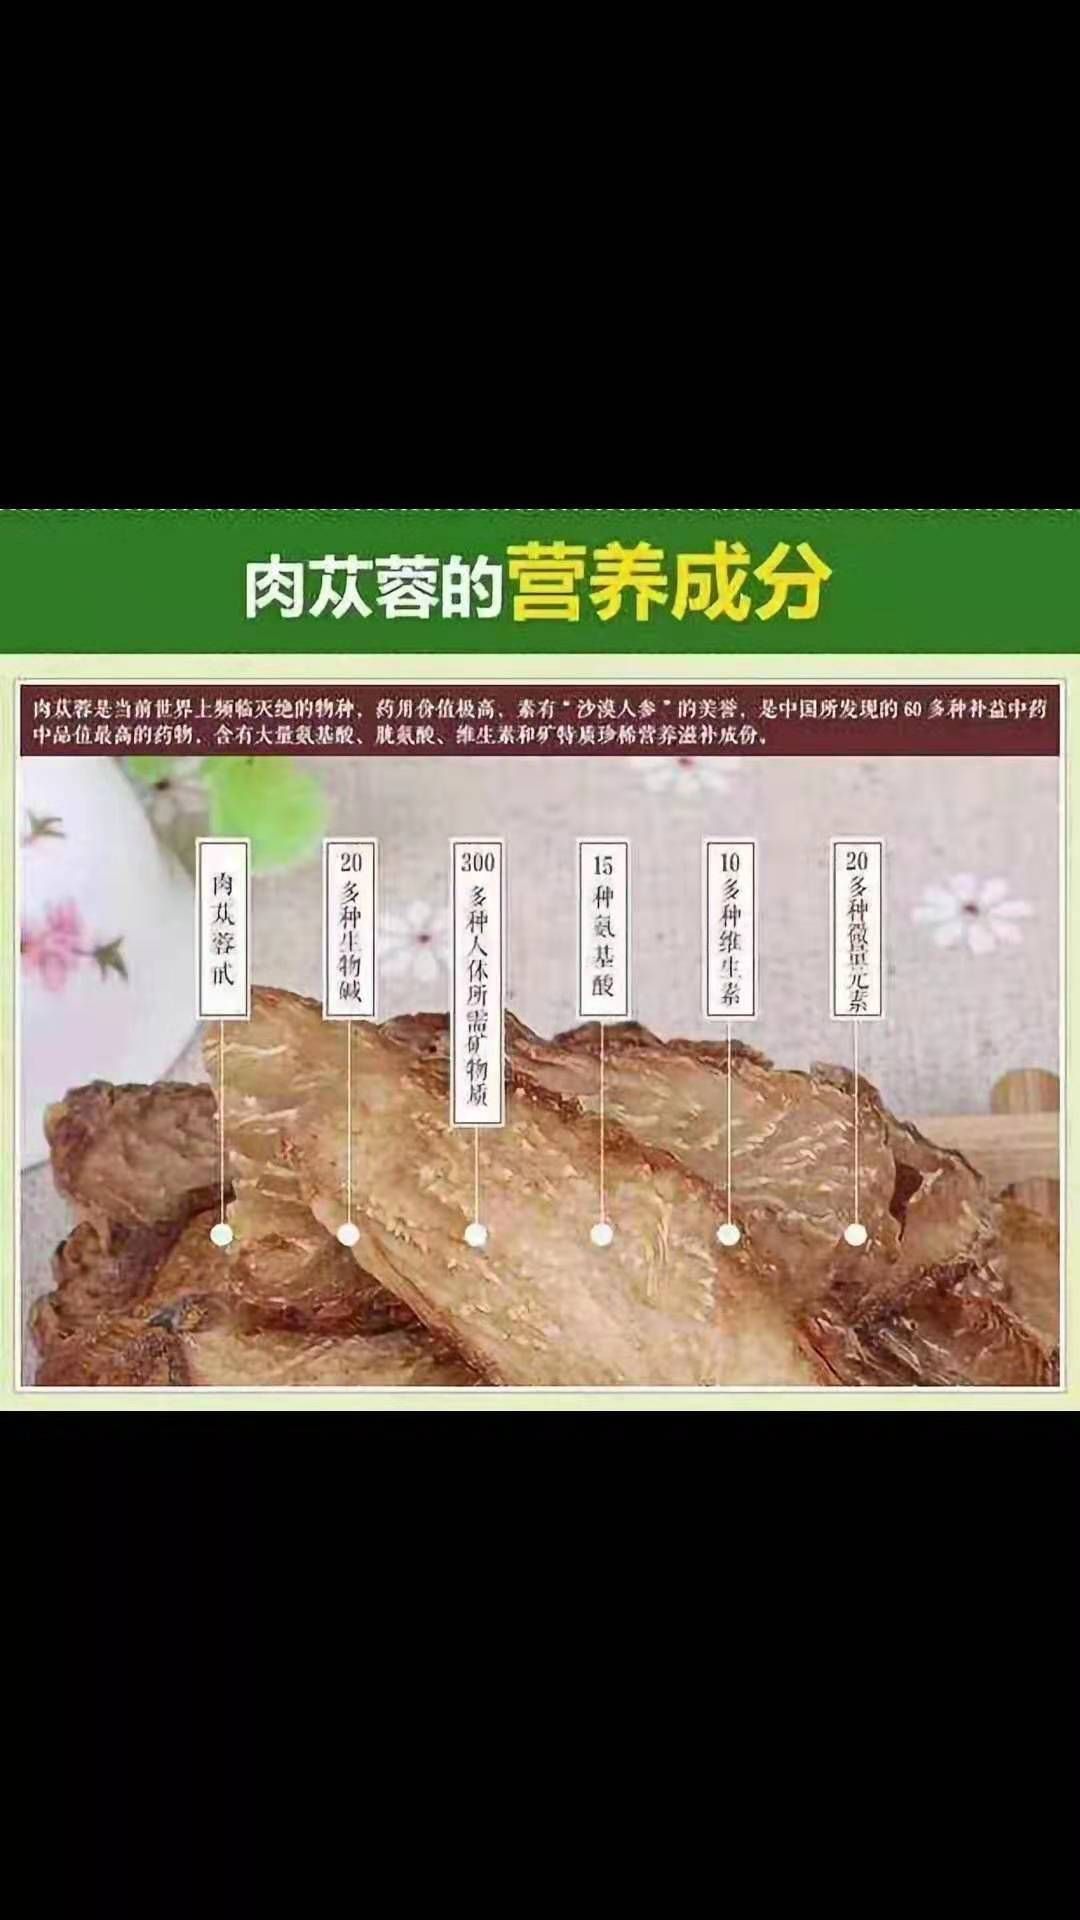 [肉苁蓉批发]肉苁蓉价格1450元/公斤 - 惠农网